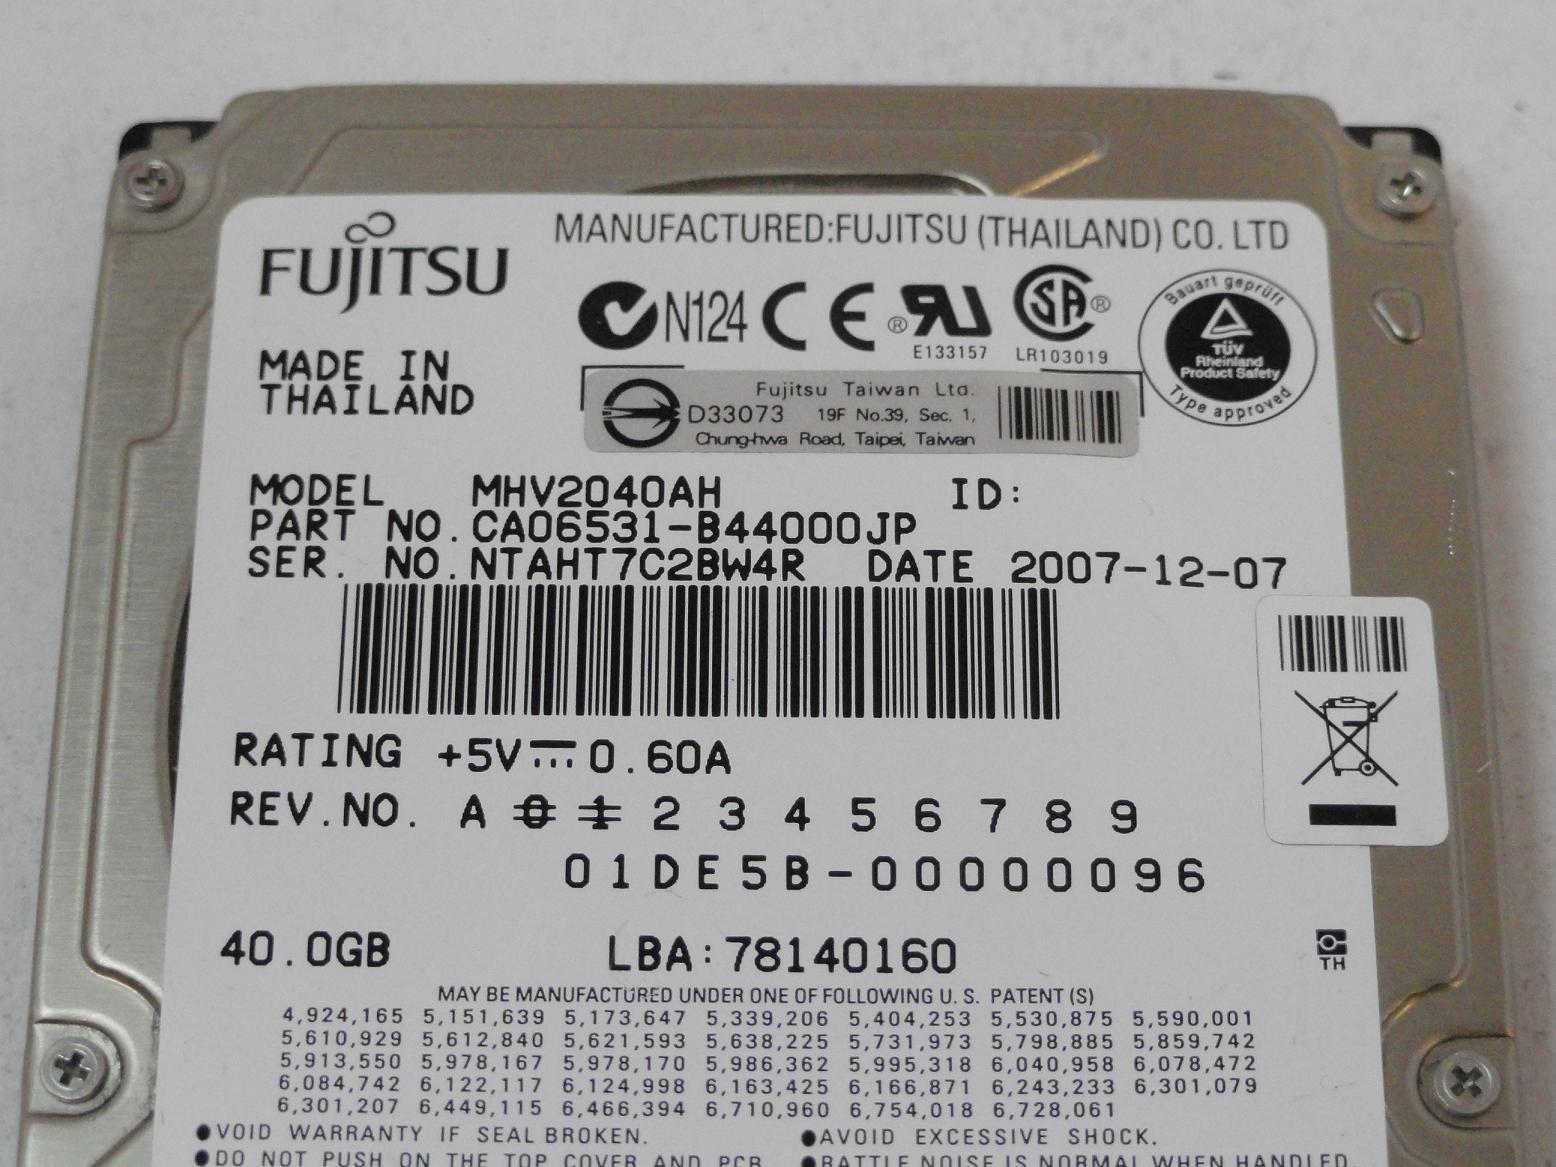 MC4297_CA06377-B11400DL_Fujitsu 40GB IDE 5400rpm 2.5in HDD - Image3